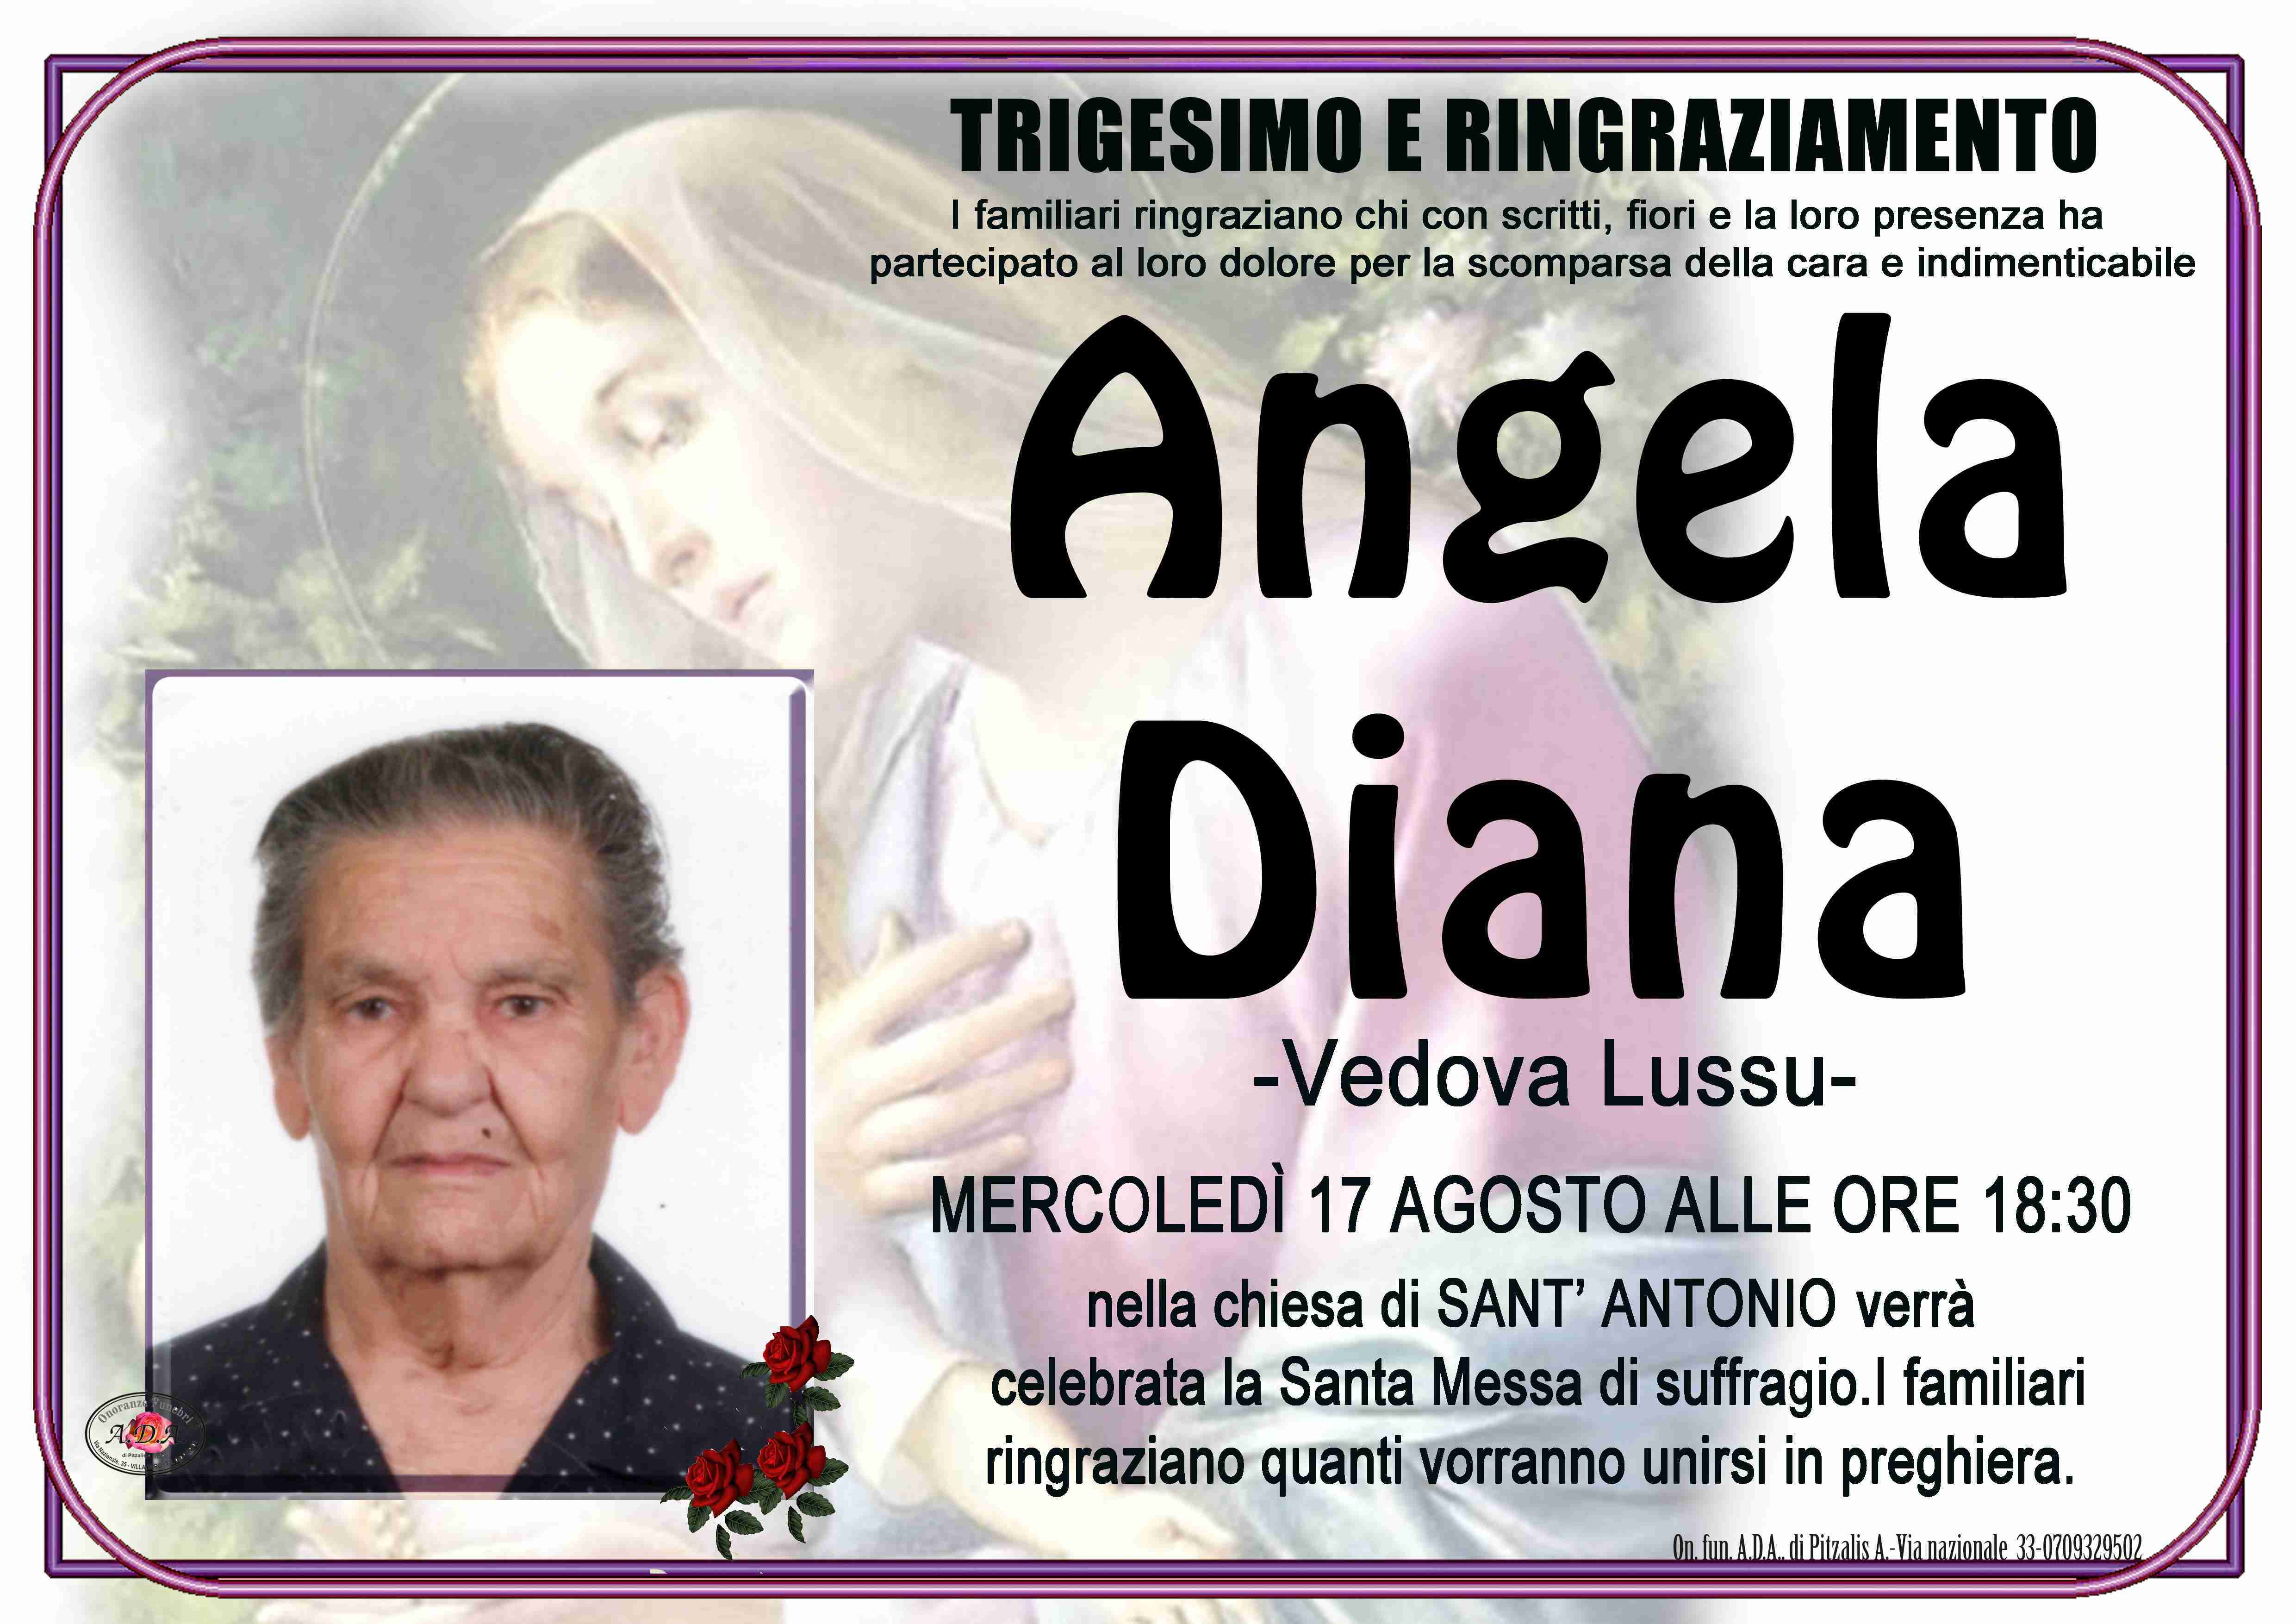 Angela Diana